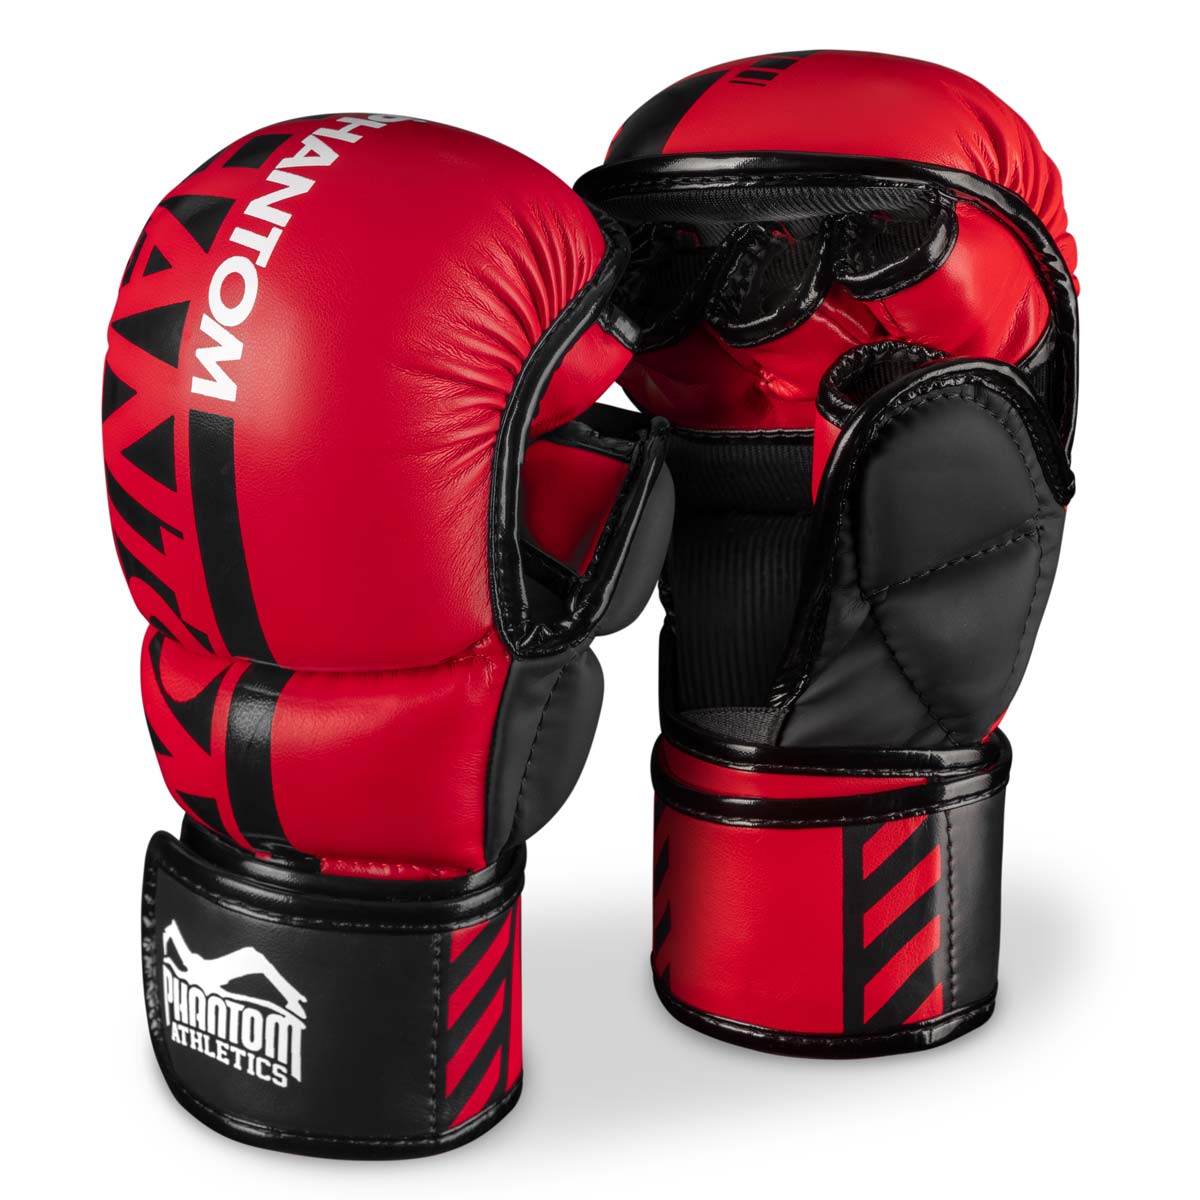 Los guantes de sparring Phantom MMA. El guante más seguro para tu entrenamiento de artes marciales. Ahora en el color rojo limitado.